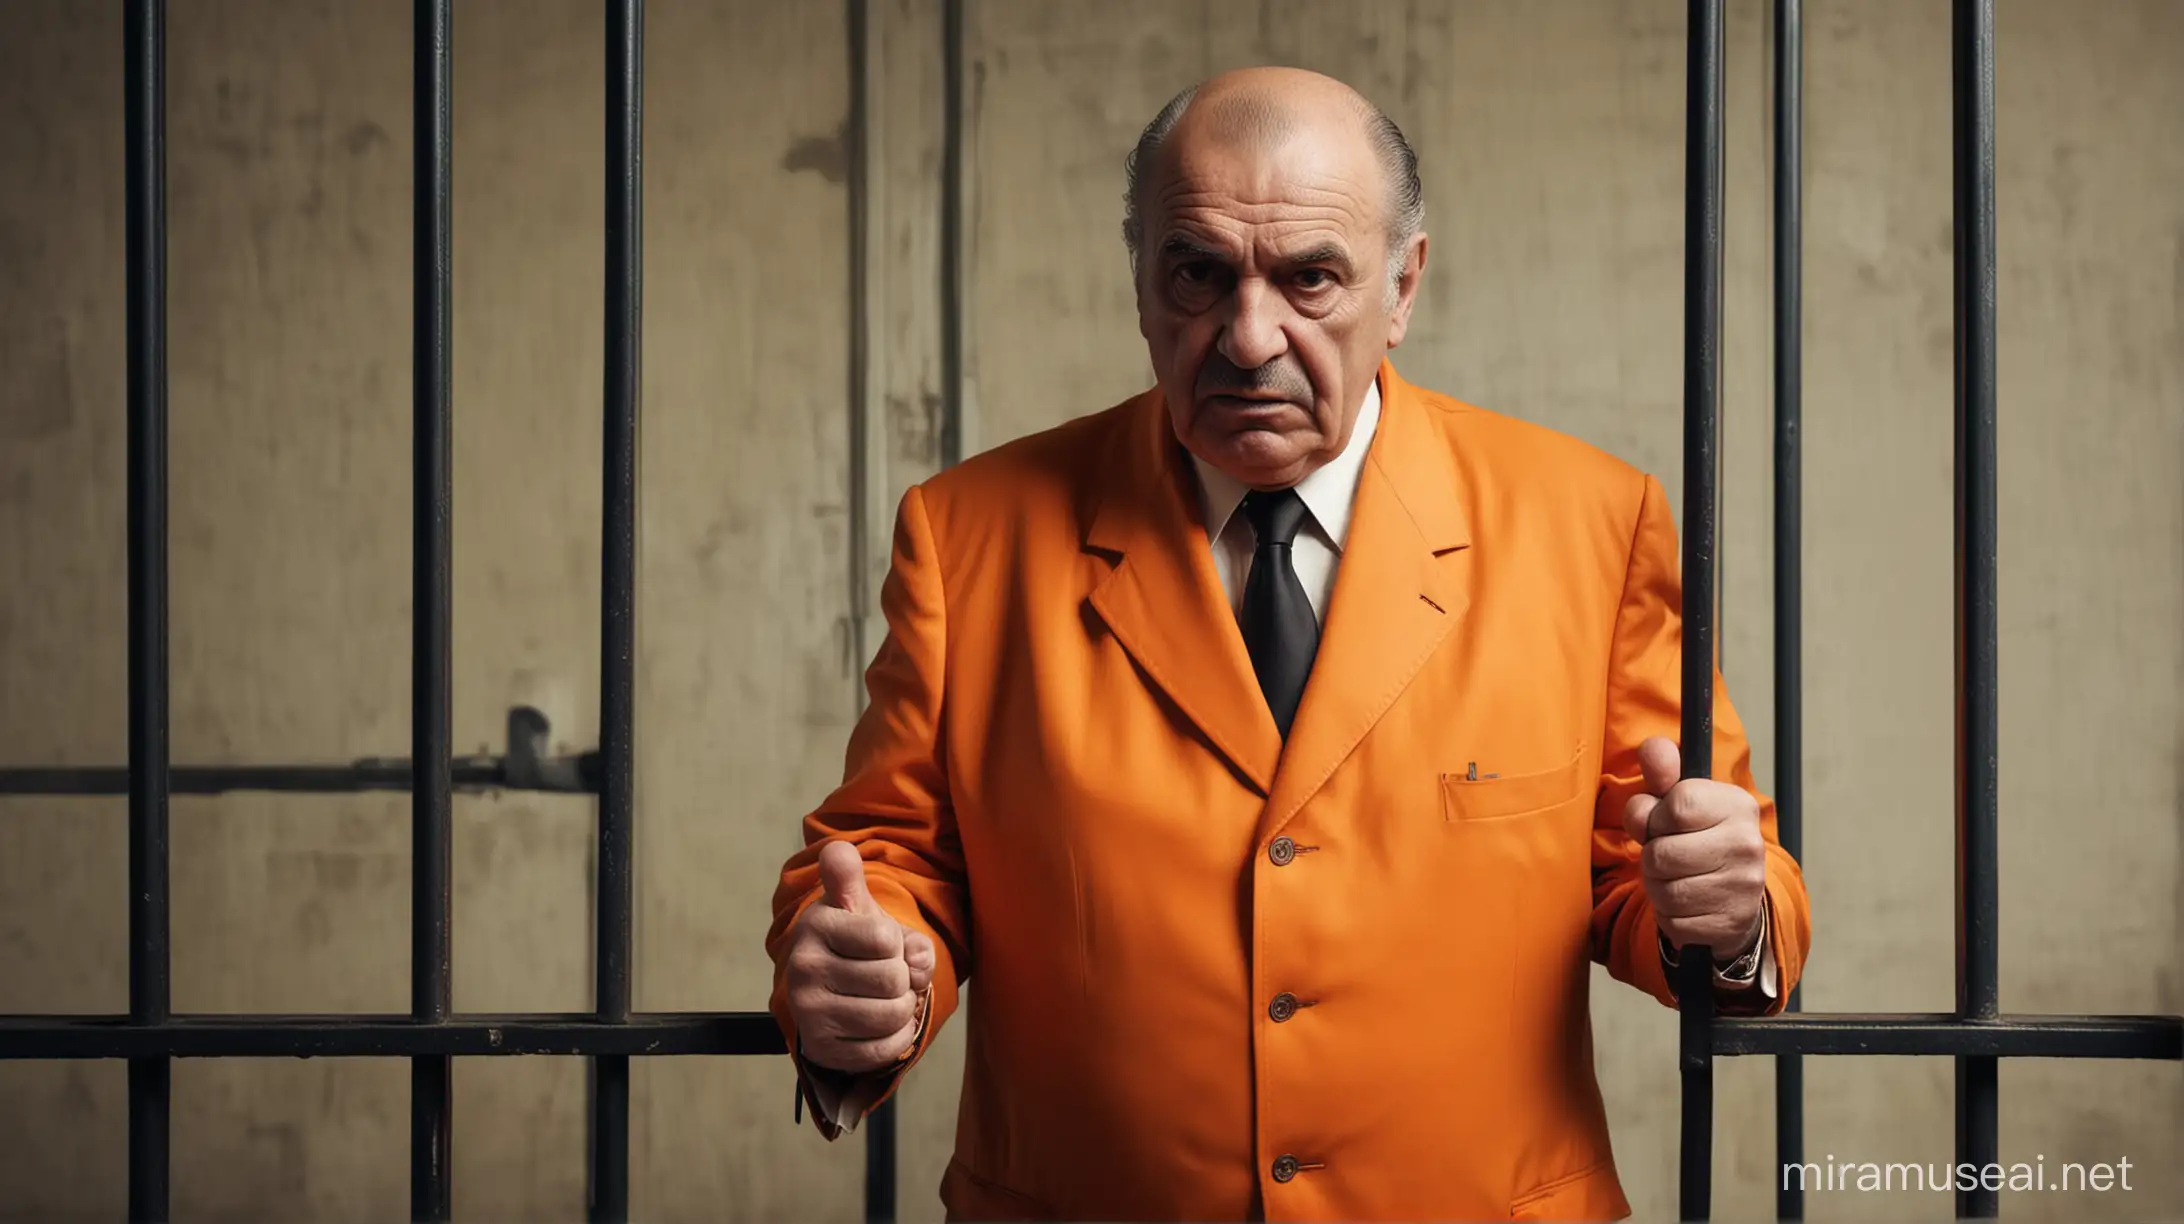 Mafia Boss Arrested in Prison Wearing Orange Suit